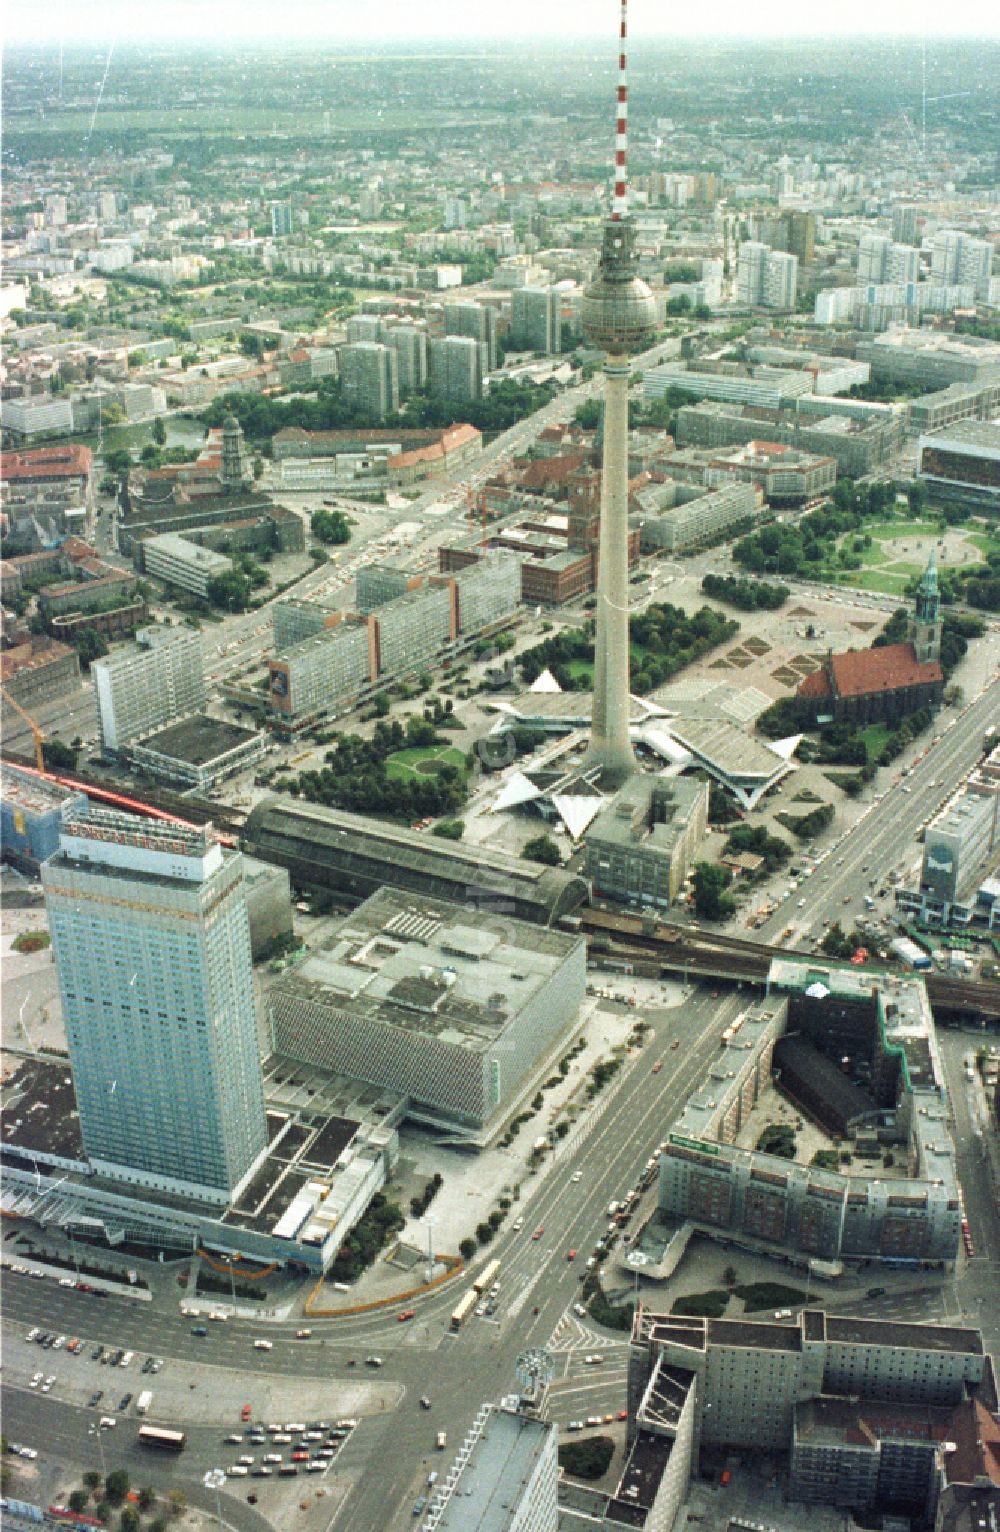 Luftbild Berlin - Stadtzentrum im Innenstadtbereich Ost am Berliner Fernsehturm im Ortsteil Mitte in Berlin, Deutschland